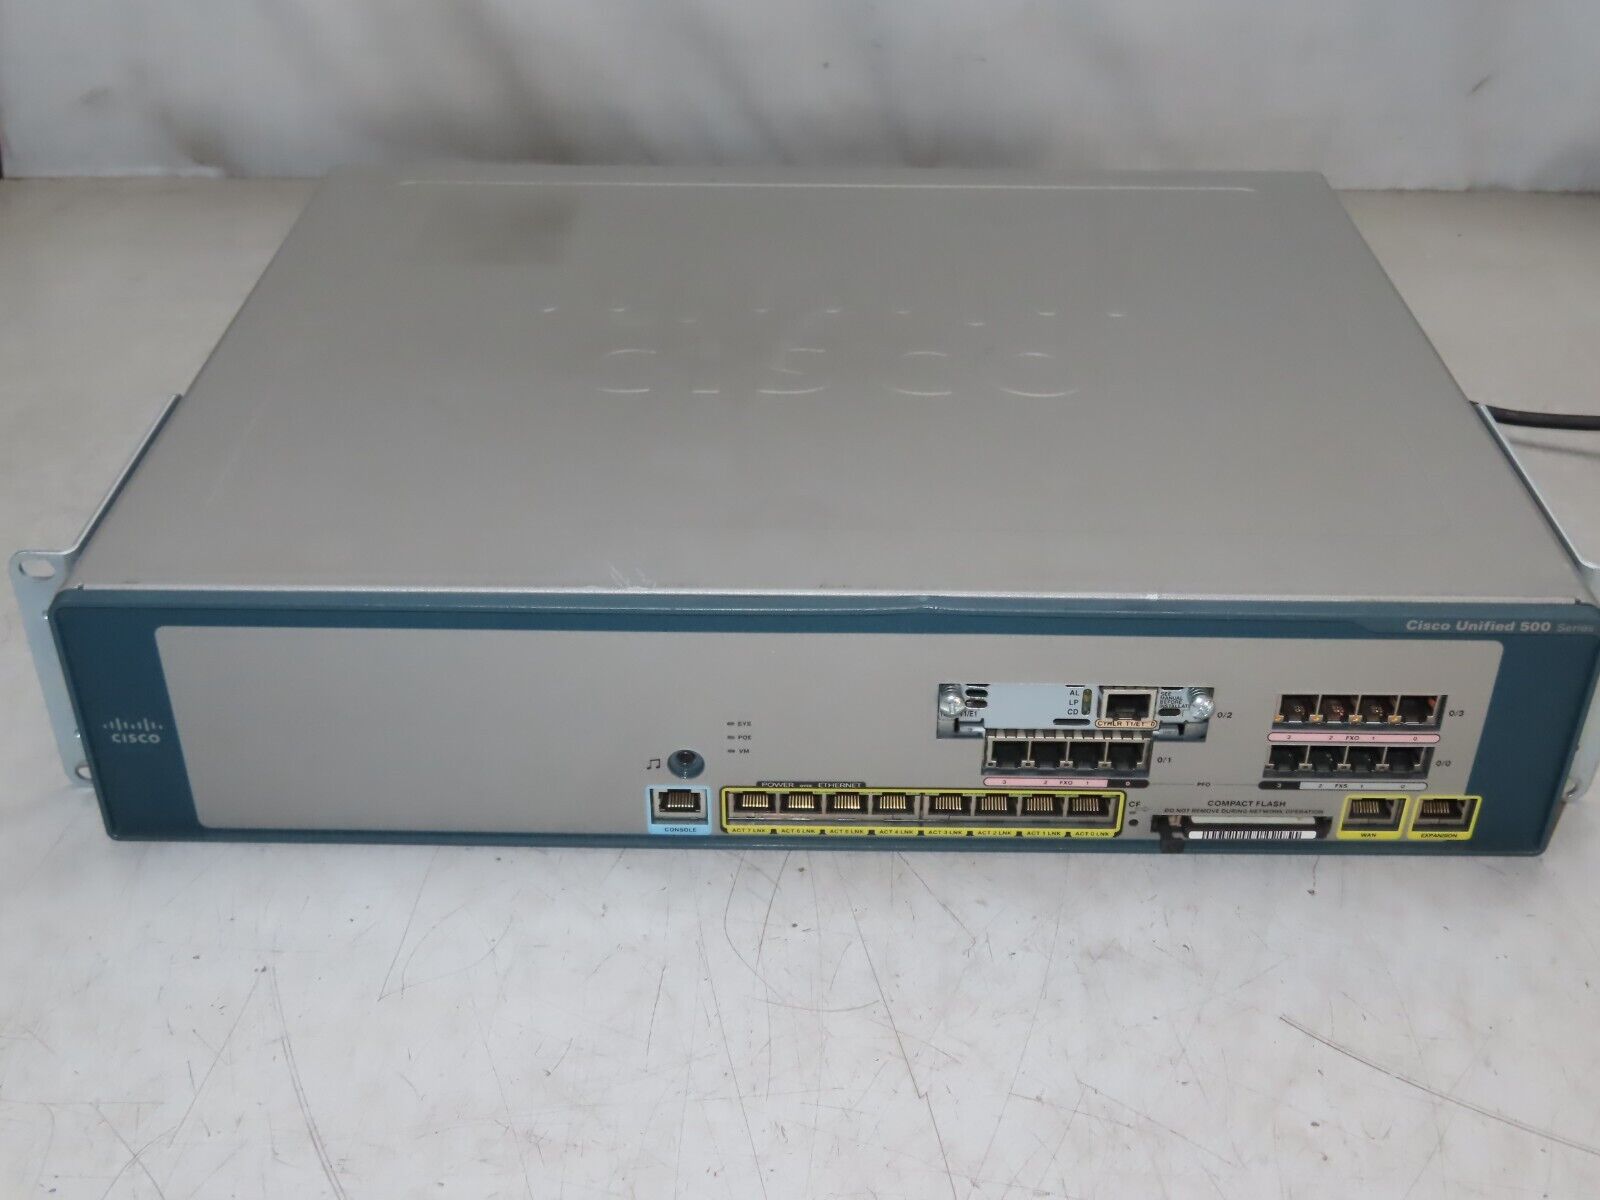 Cisco UC520-32U-8FXO-K9 V01 Unified Communication Device